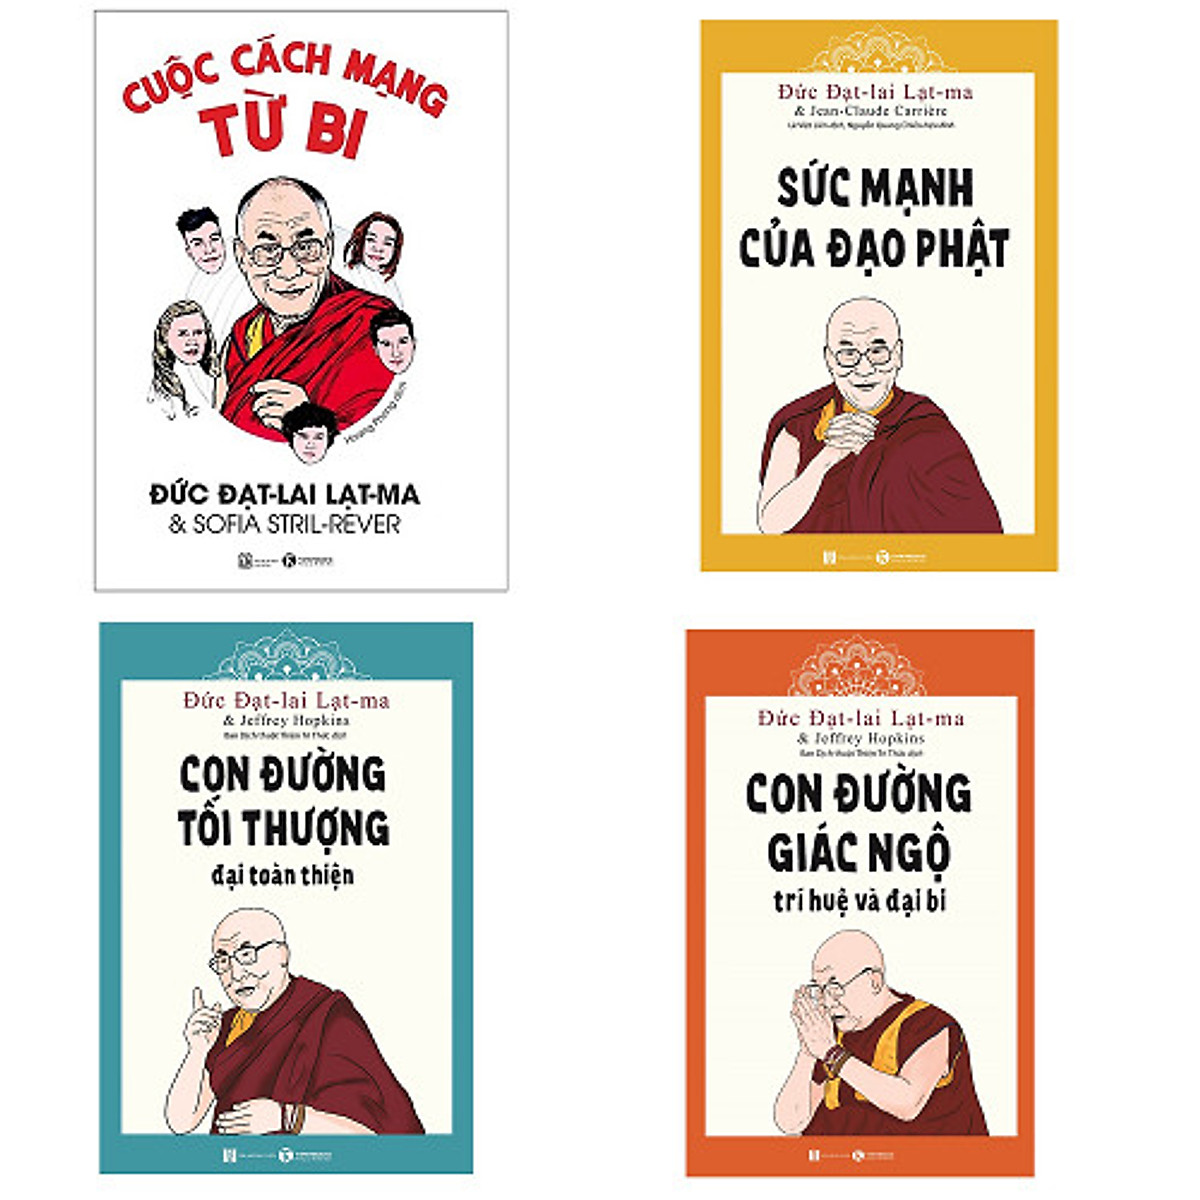 Bộ 4 cuốn sách của Đức Đạt-lai Lạt-ma: Sức Mạnh Của Đạo Phật - Cuộc Cách Mạng Từ Bi - Con Đường Tối Thượng - Con Đường Giác Ngộ